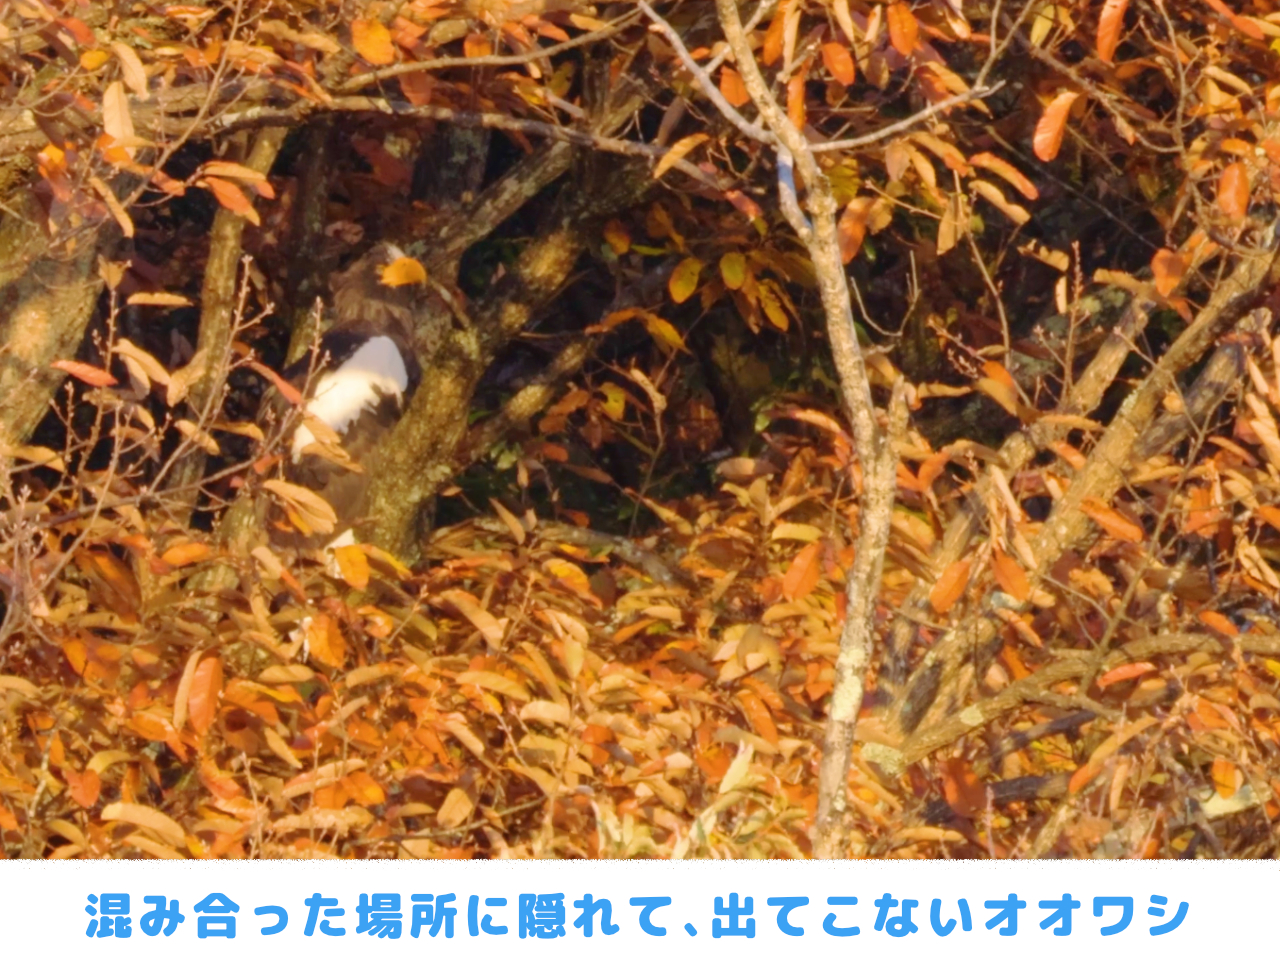 葉の混み合った場所に隠れるオオワシの画像